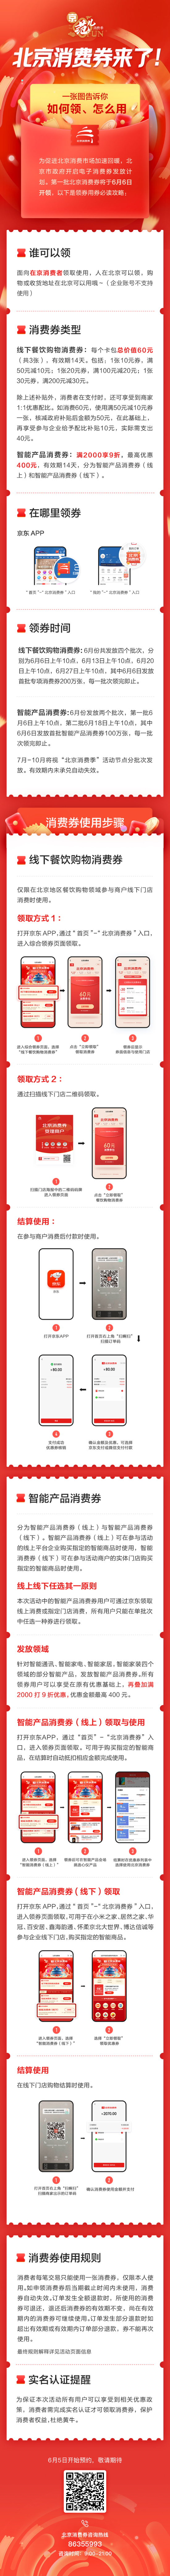 北京将发122亿元消费券：首批6月6日通过京东App领取